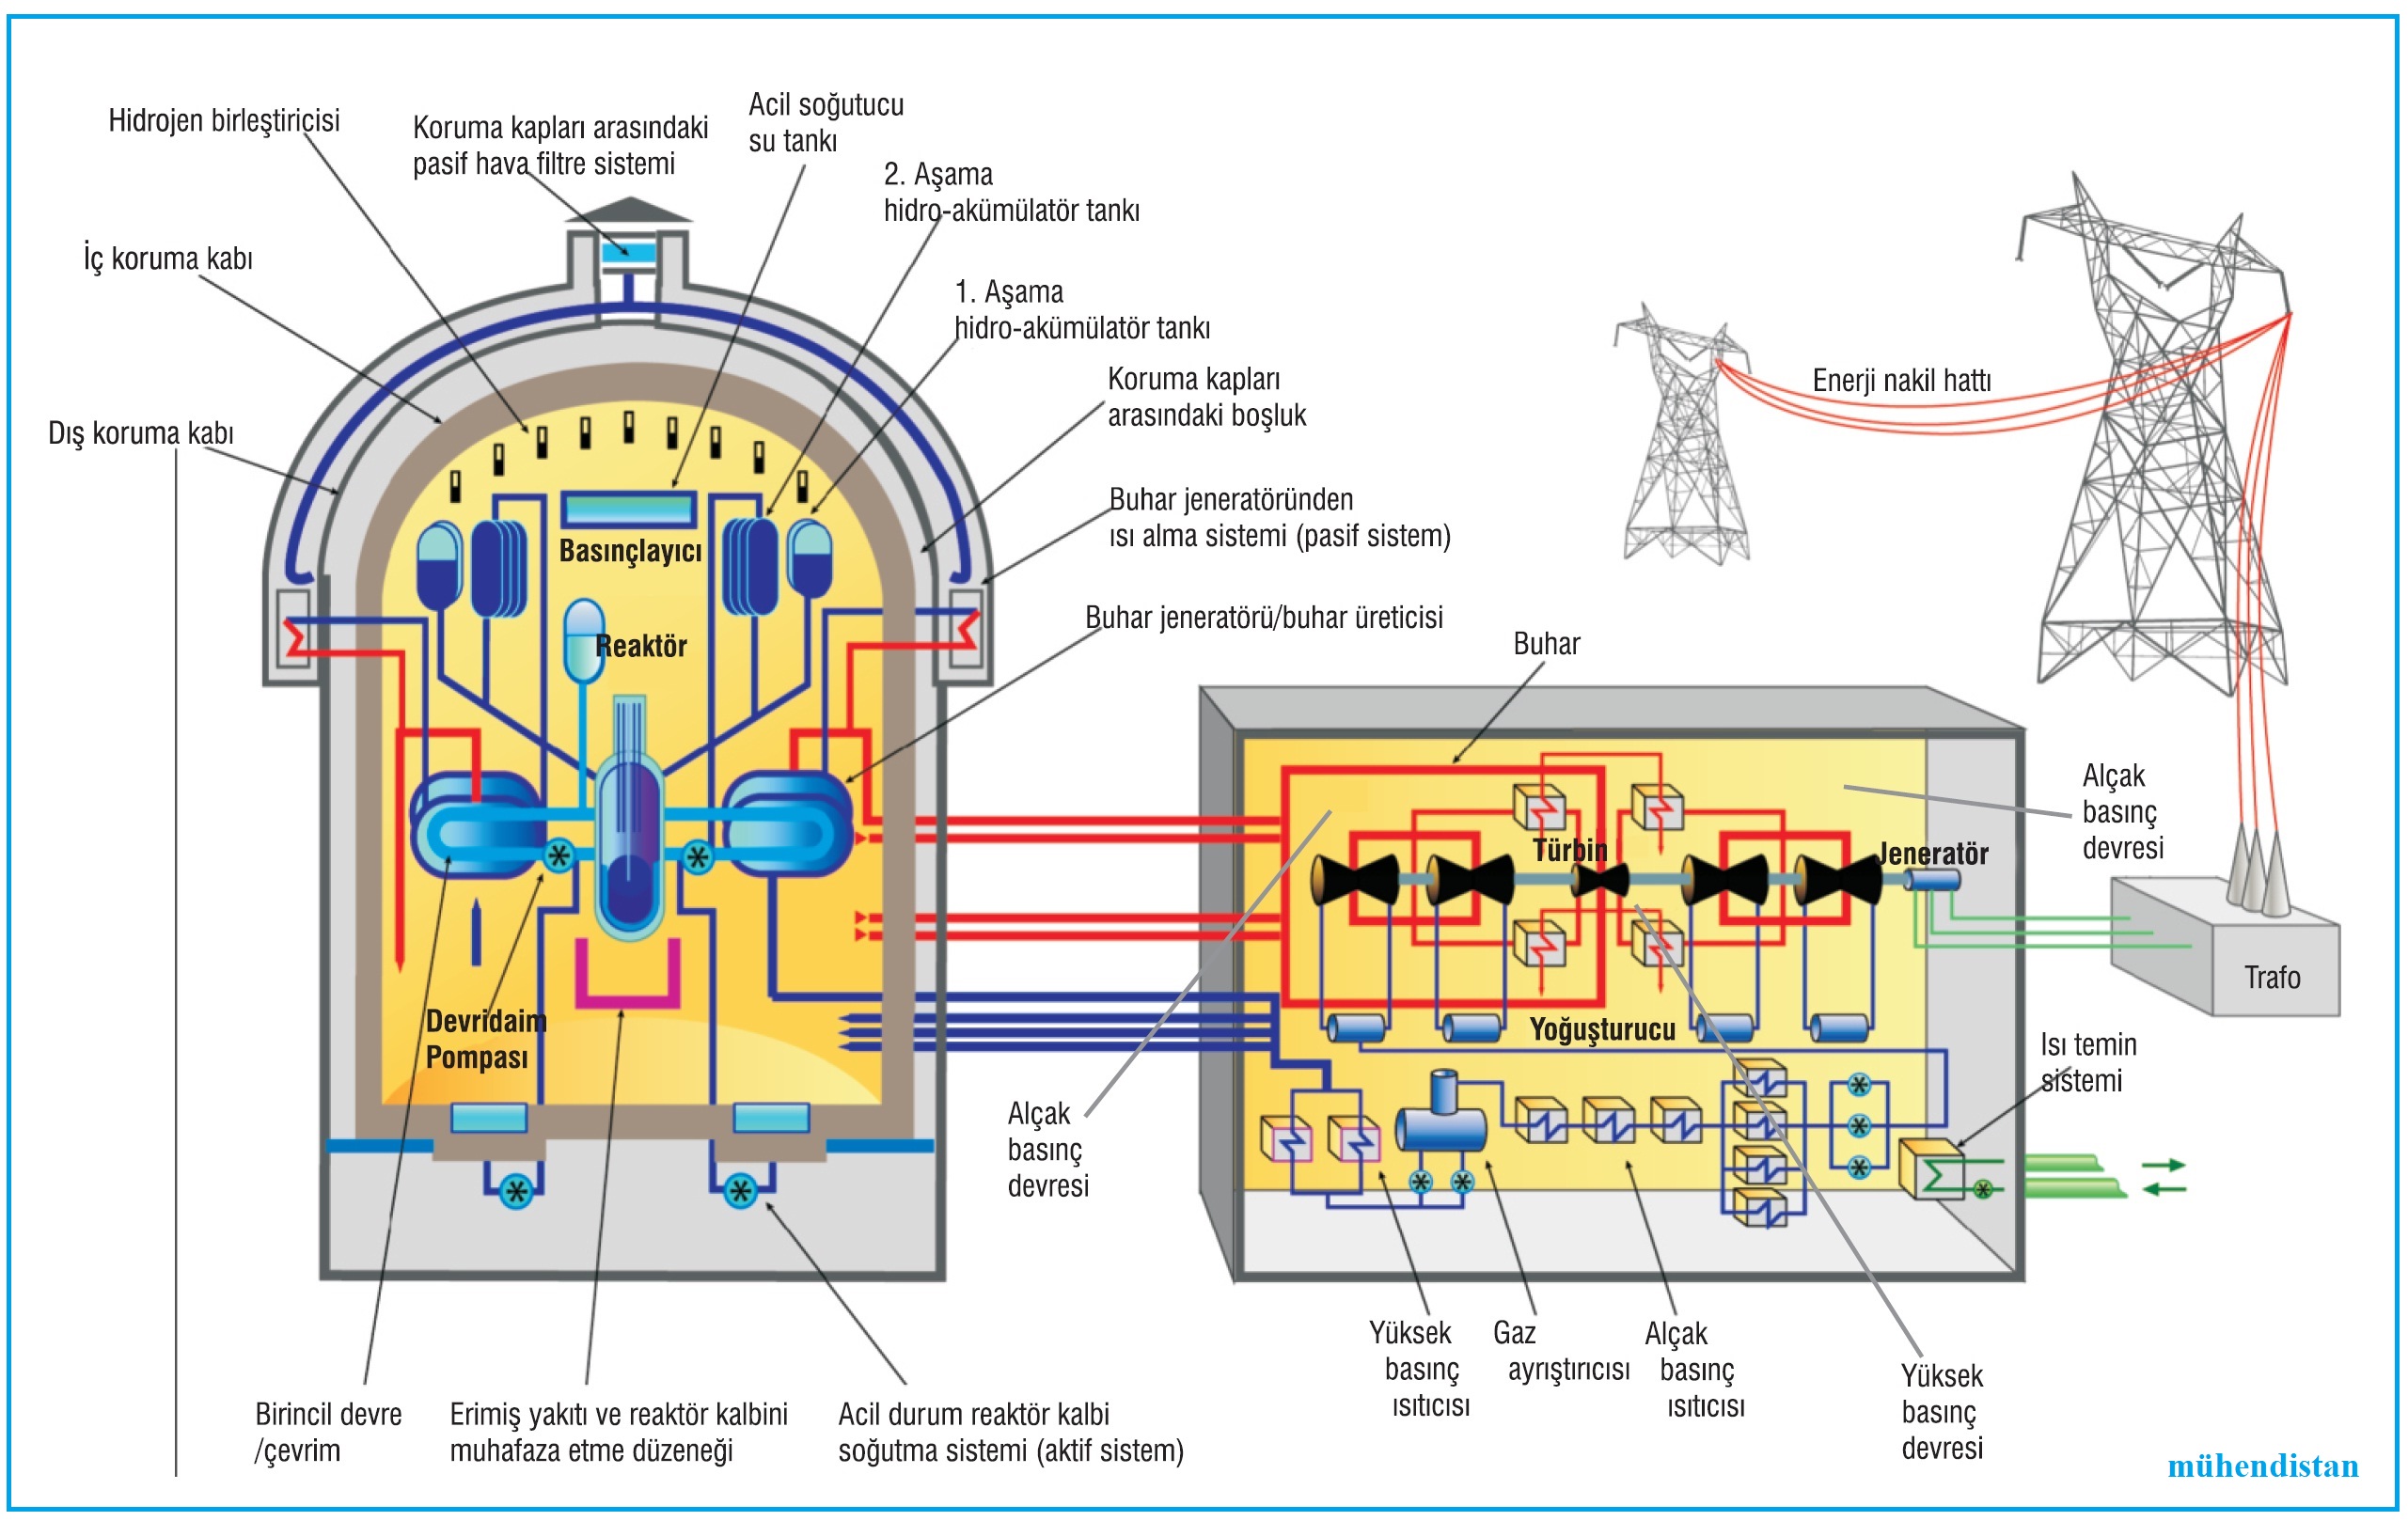 Nükleer enerji santralleri oluşturan temel parçalar